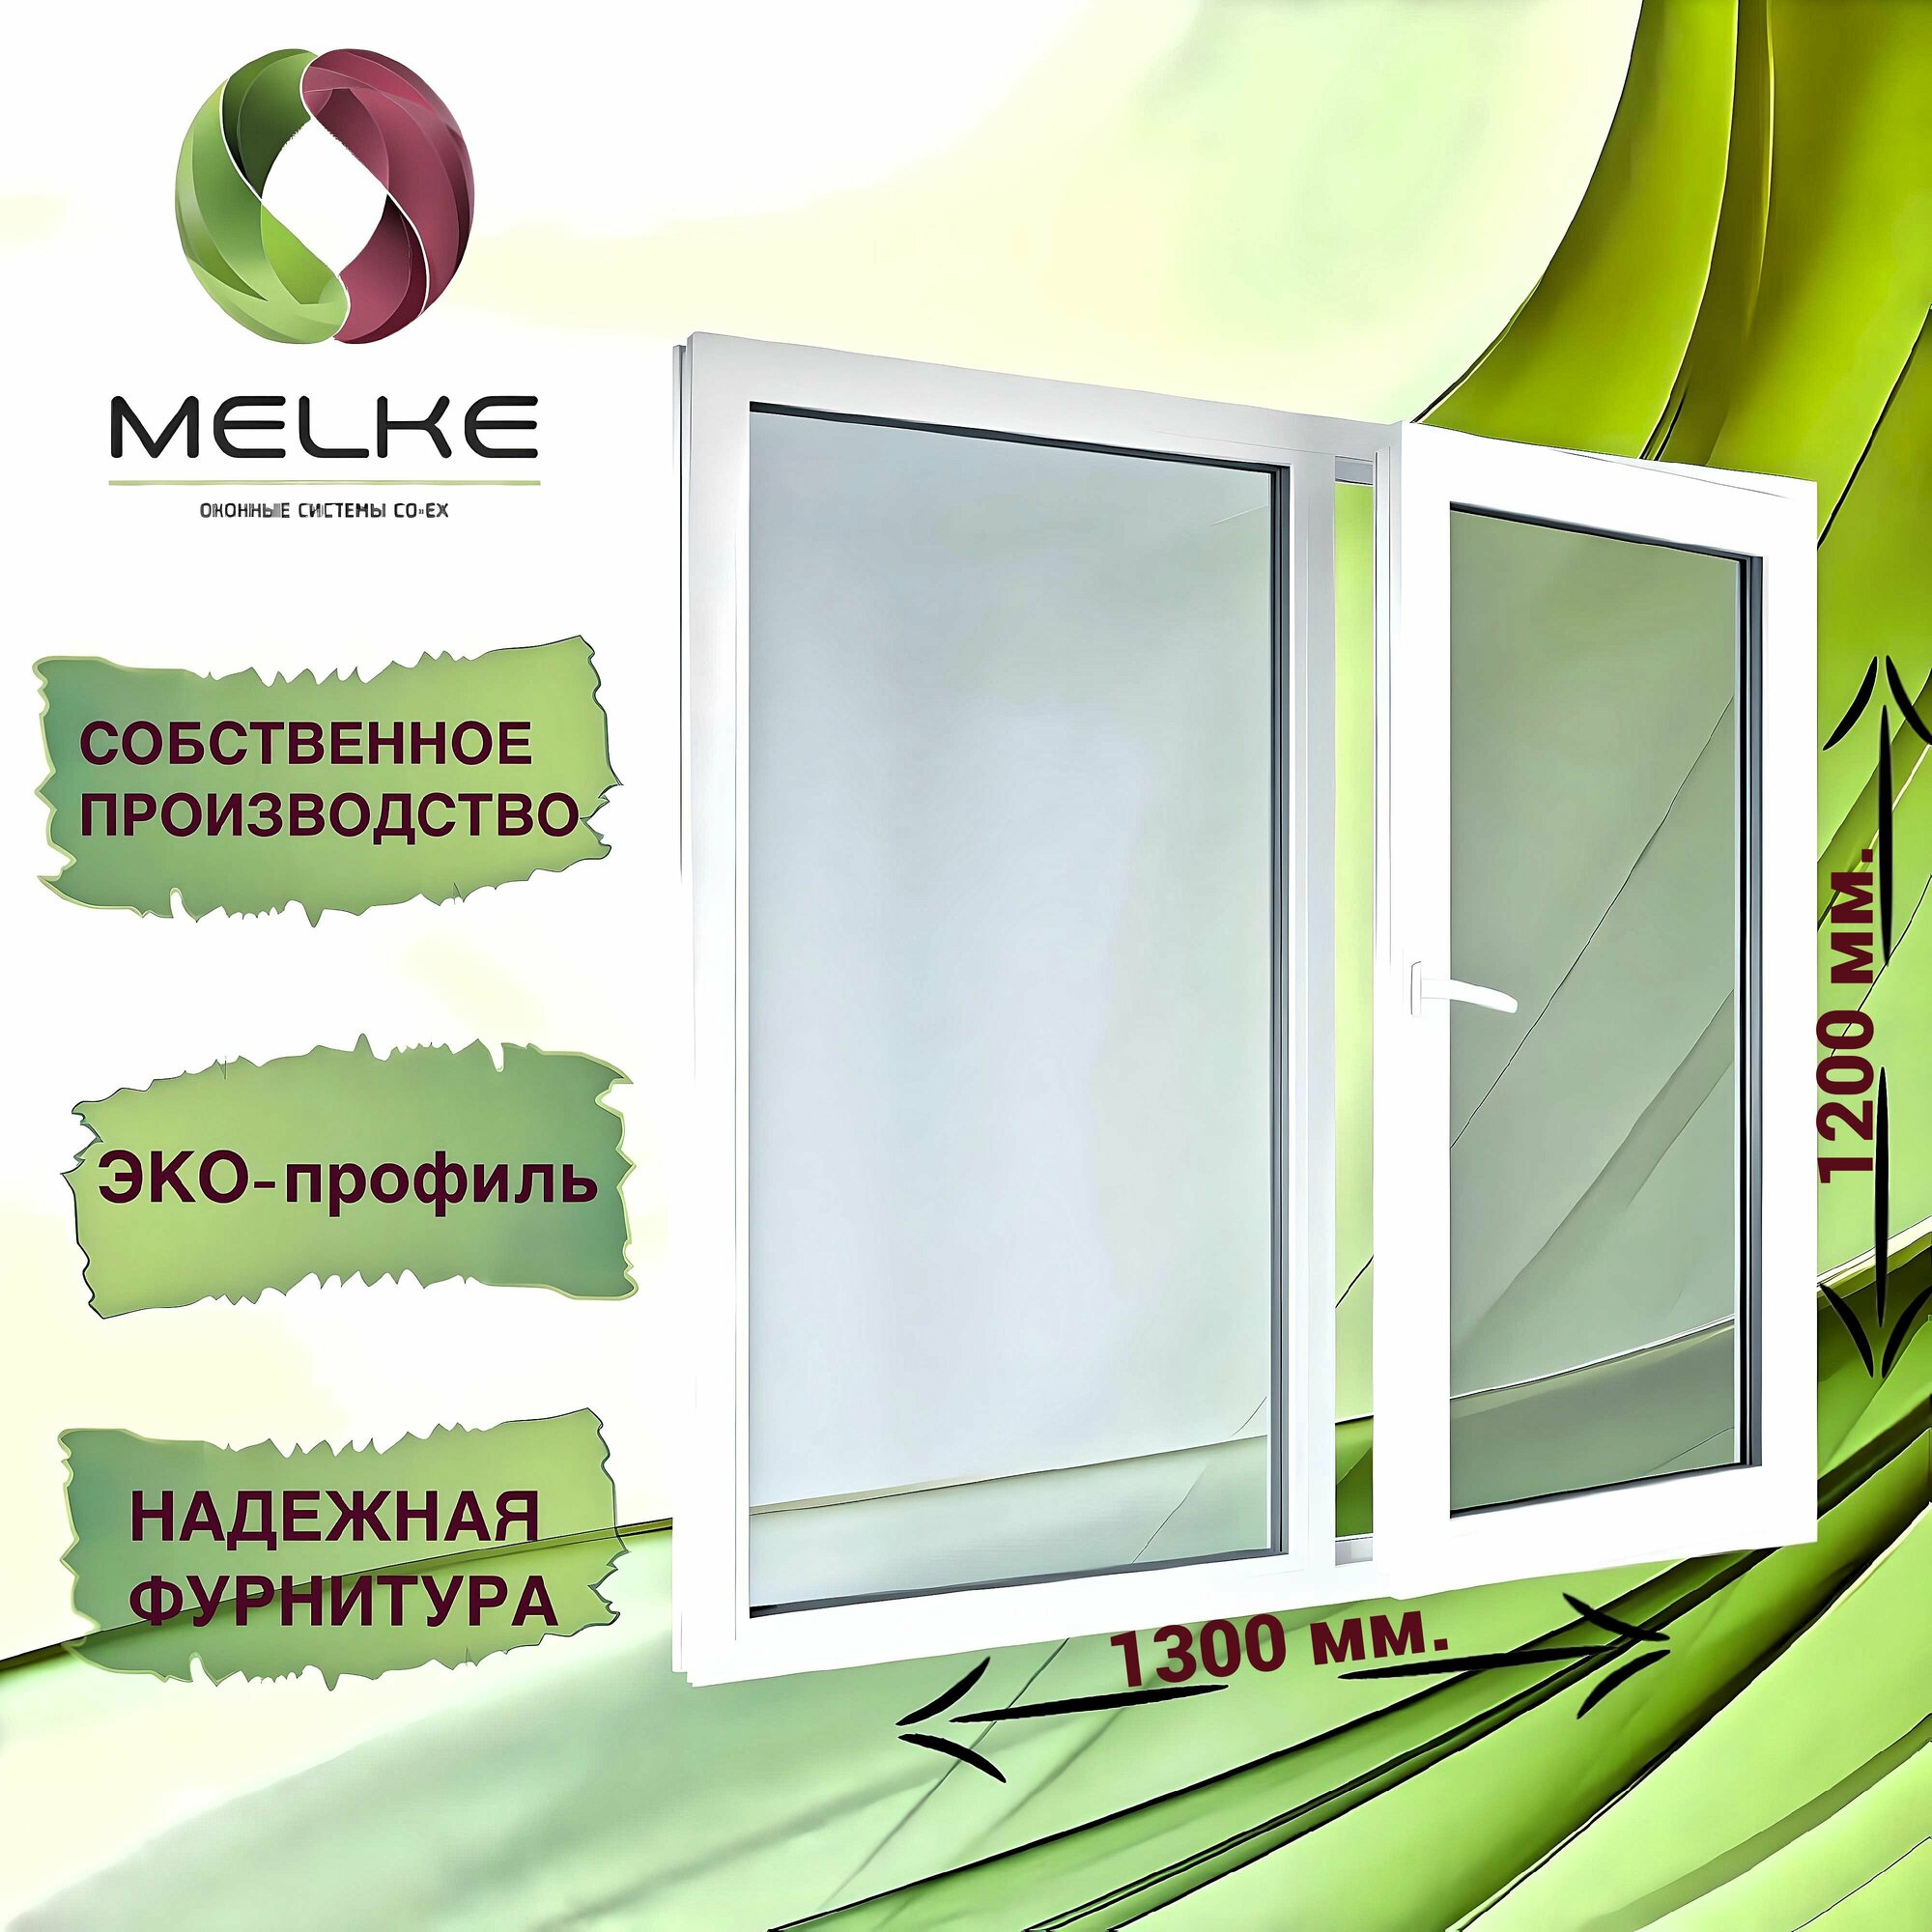 Окно 1200 x 1300 мм, профиль Melke 60 (Фурнитура FUTURUSS), двухстворчатое, с поворотно-откидной правой и глухой левой створками, 2-х камерный стеклопакет, 3 стекла